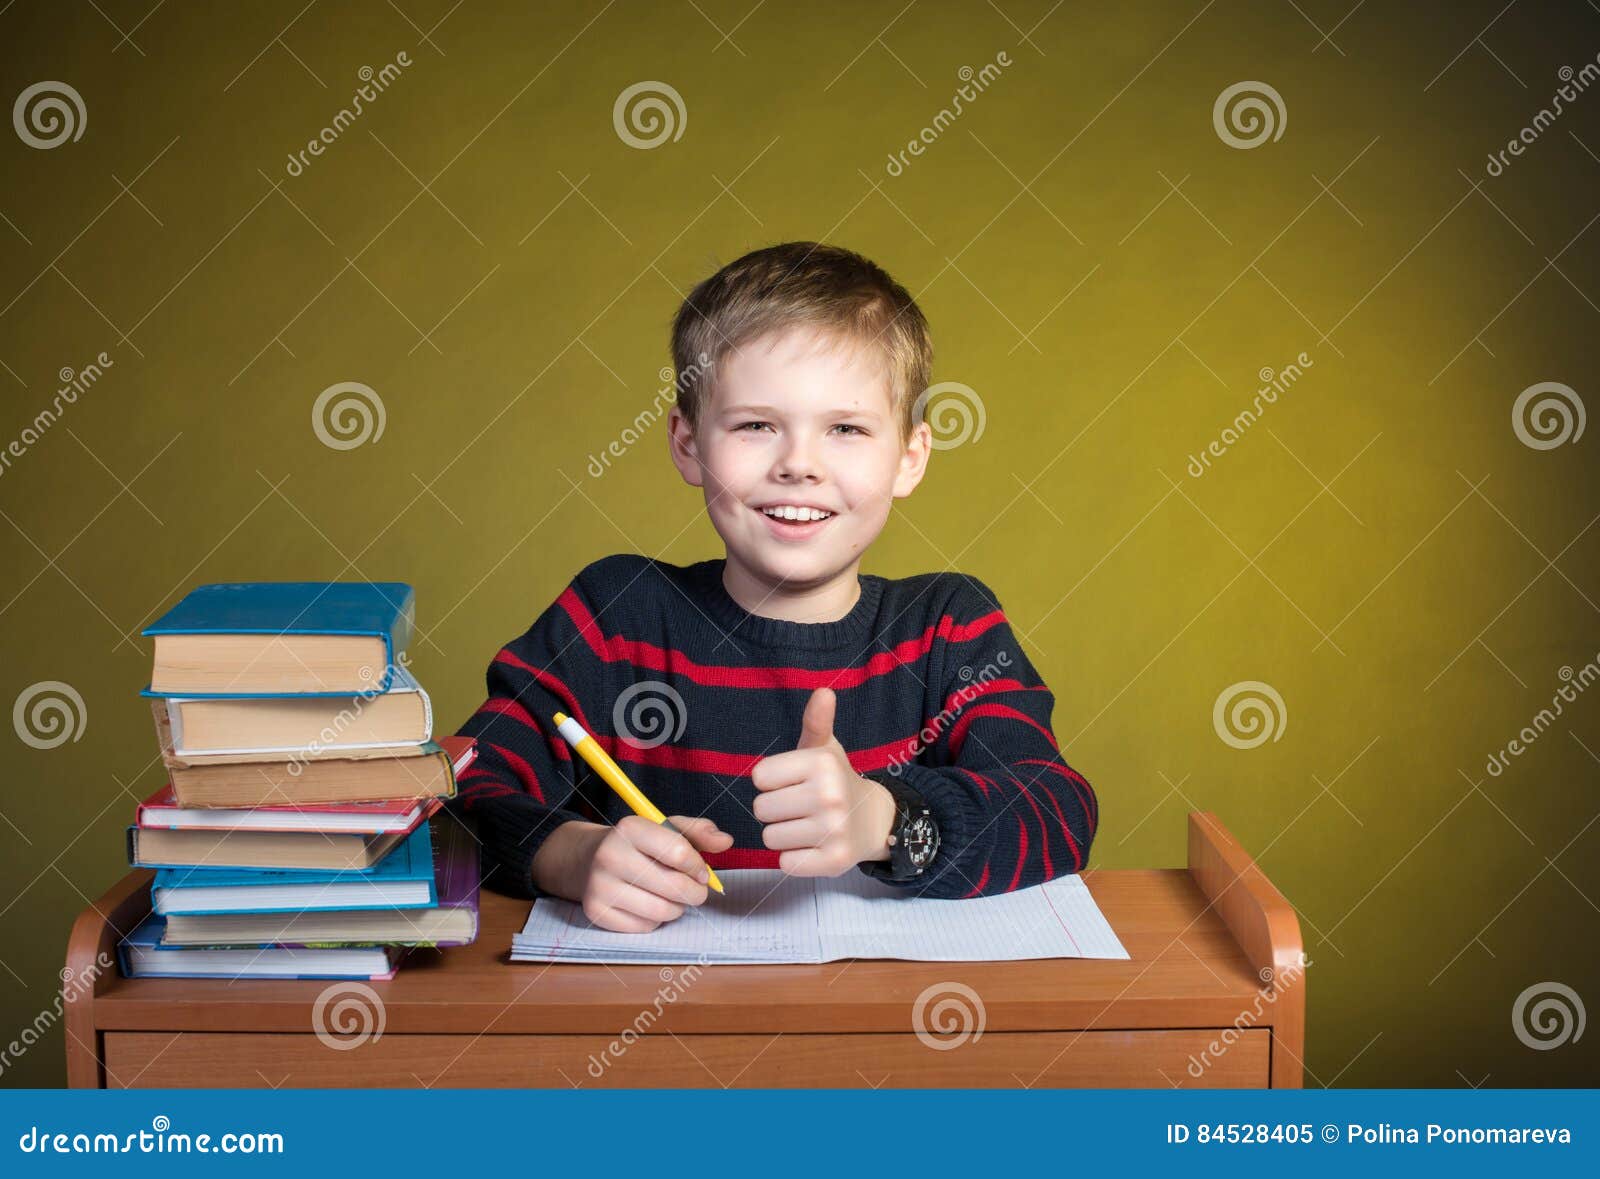 kid at homework